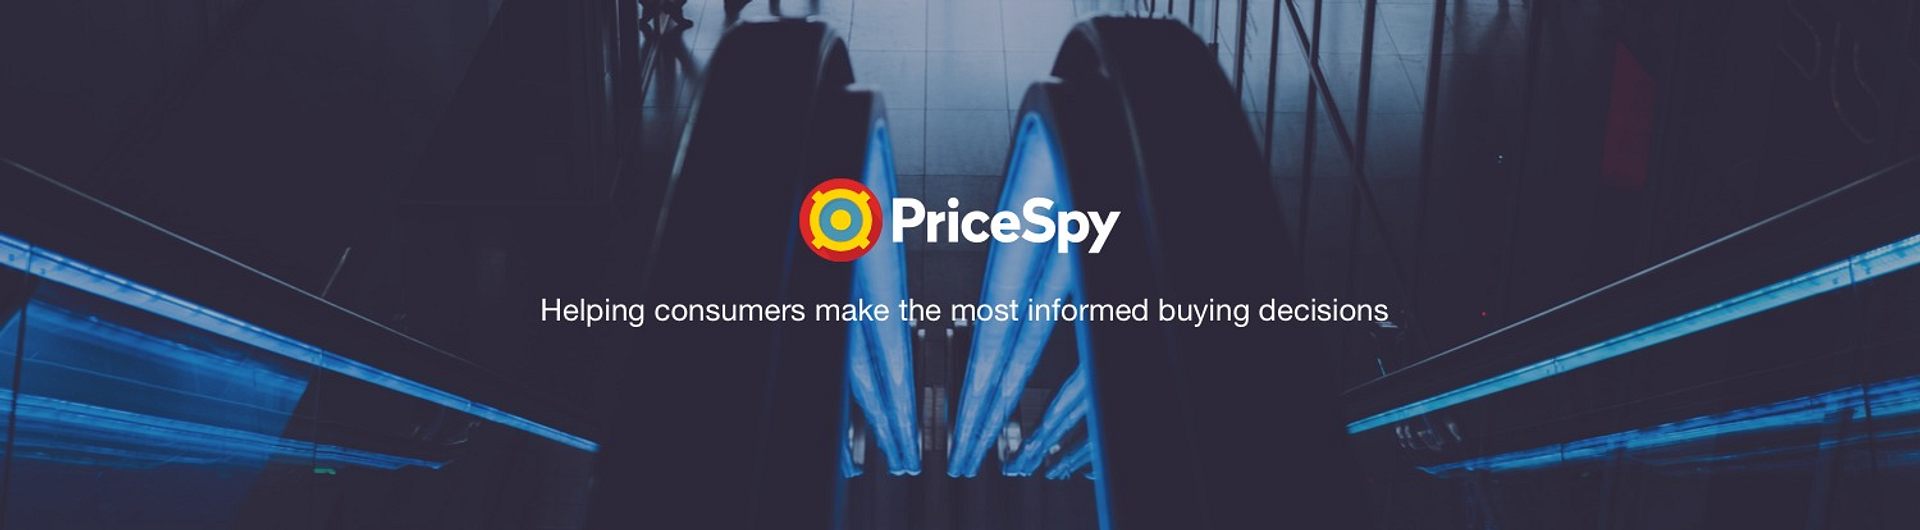 PriceSpy.co.nz